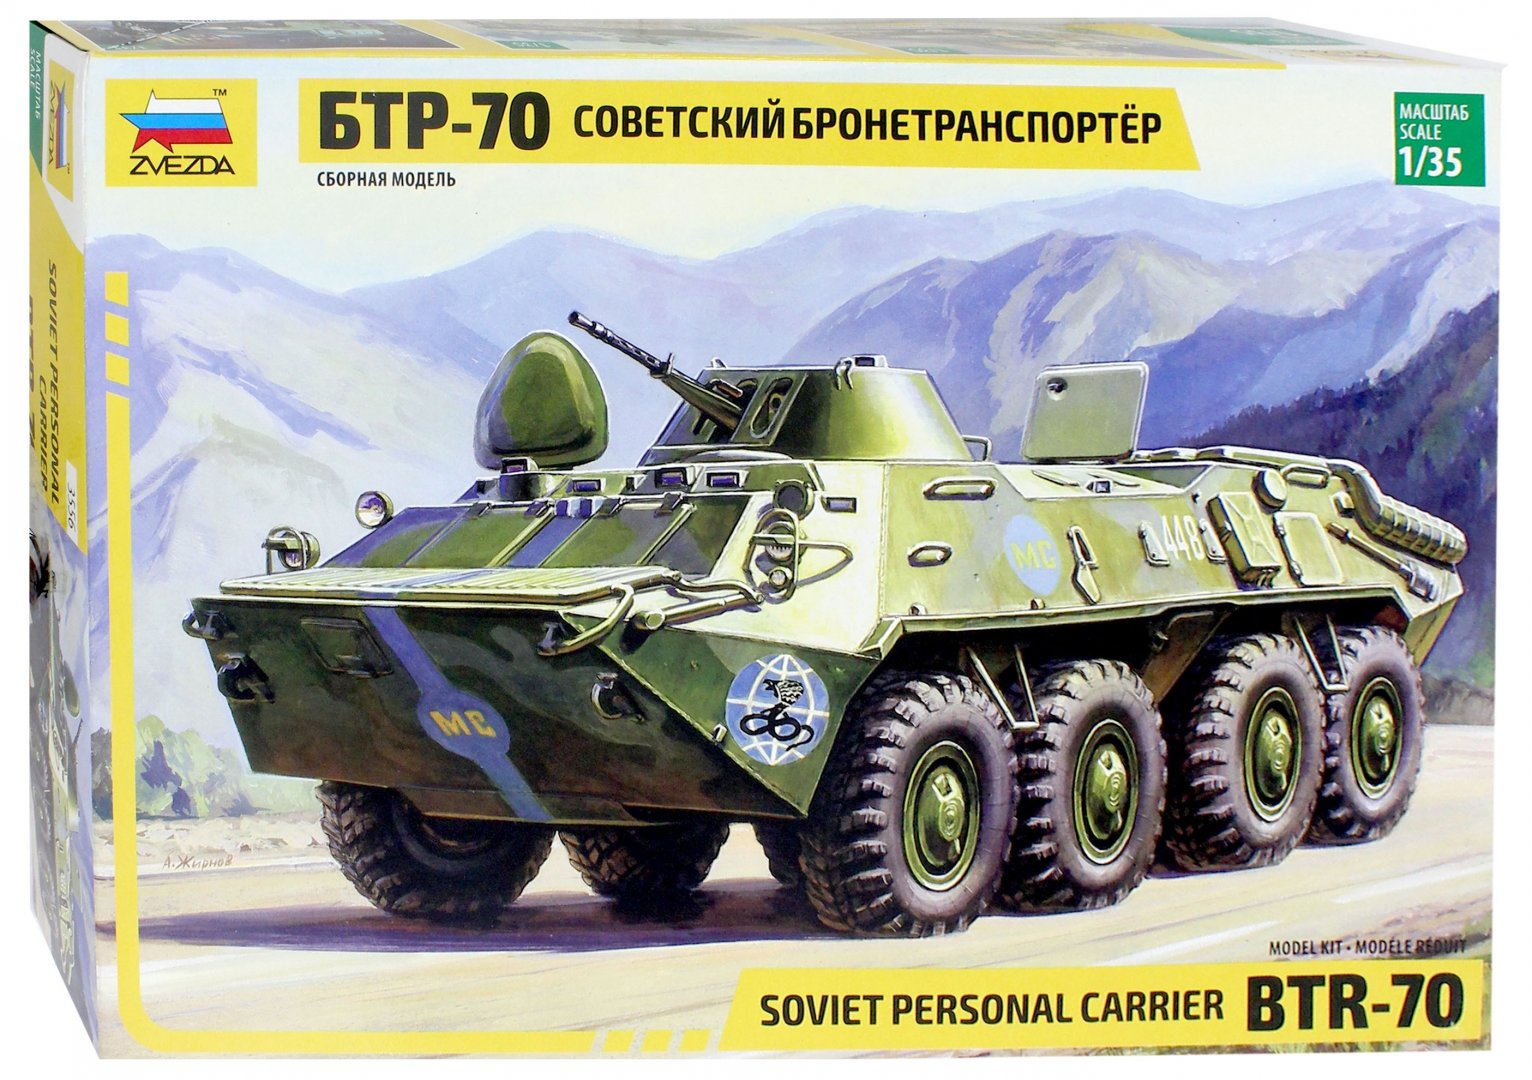 Иллюстрация 1 из 8 для Советский бронетранспортер БТР-70 1/35 (ограниченный выпуск) (3556) | Лабиринт - игрушки. Источник: Лабиринт